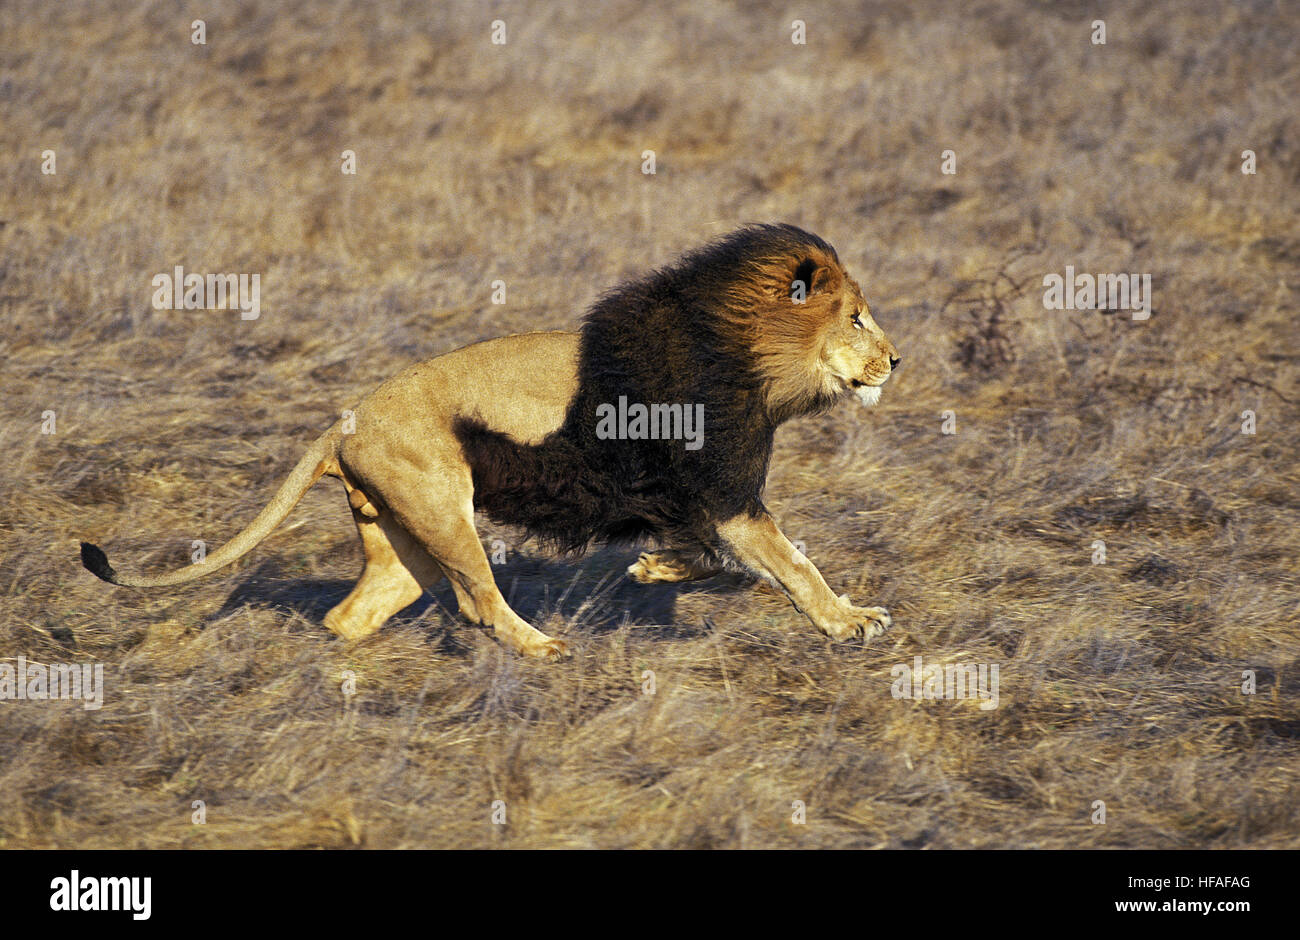 L'African Lion, Panthera leo, homme d'exécution Banque D'Images